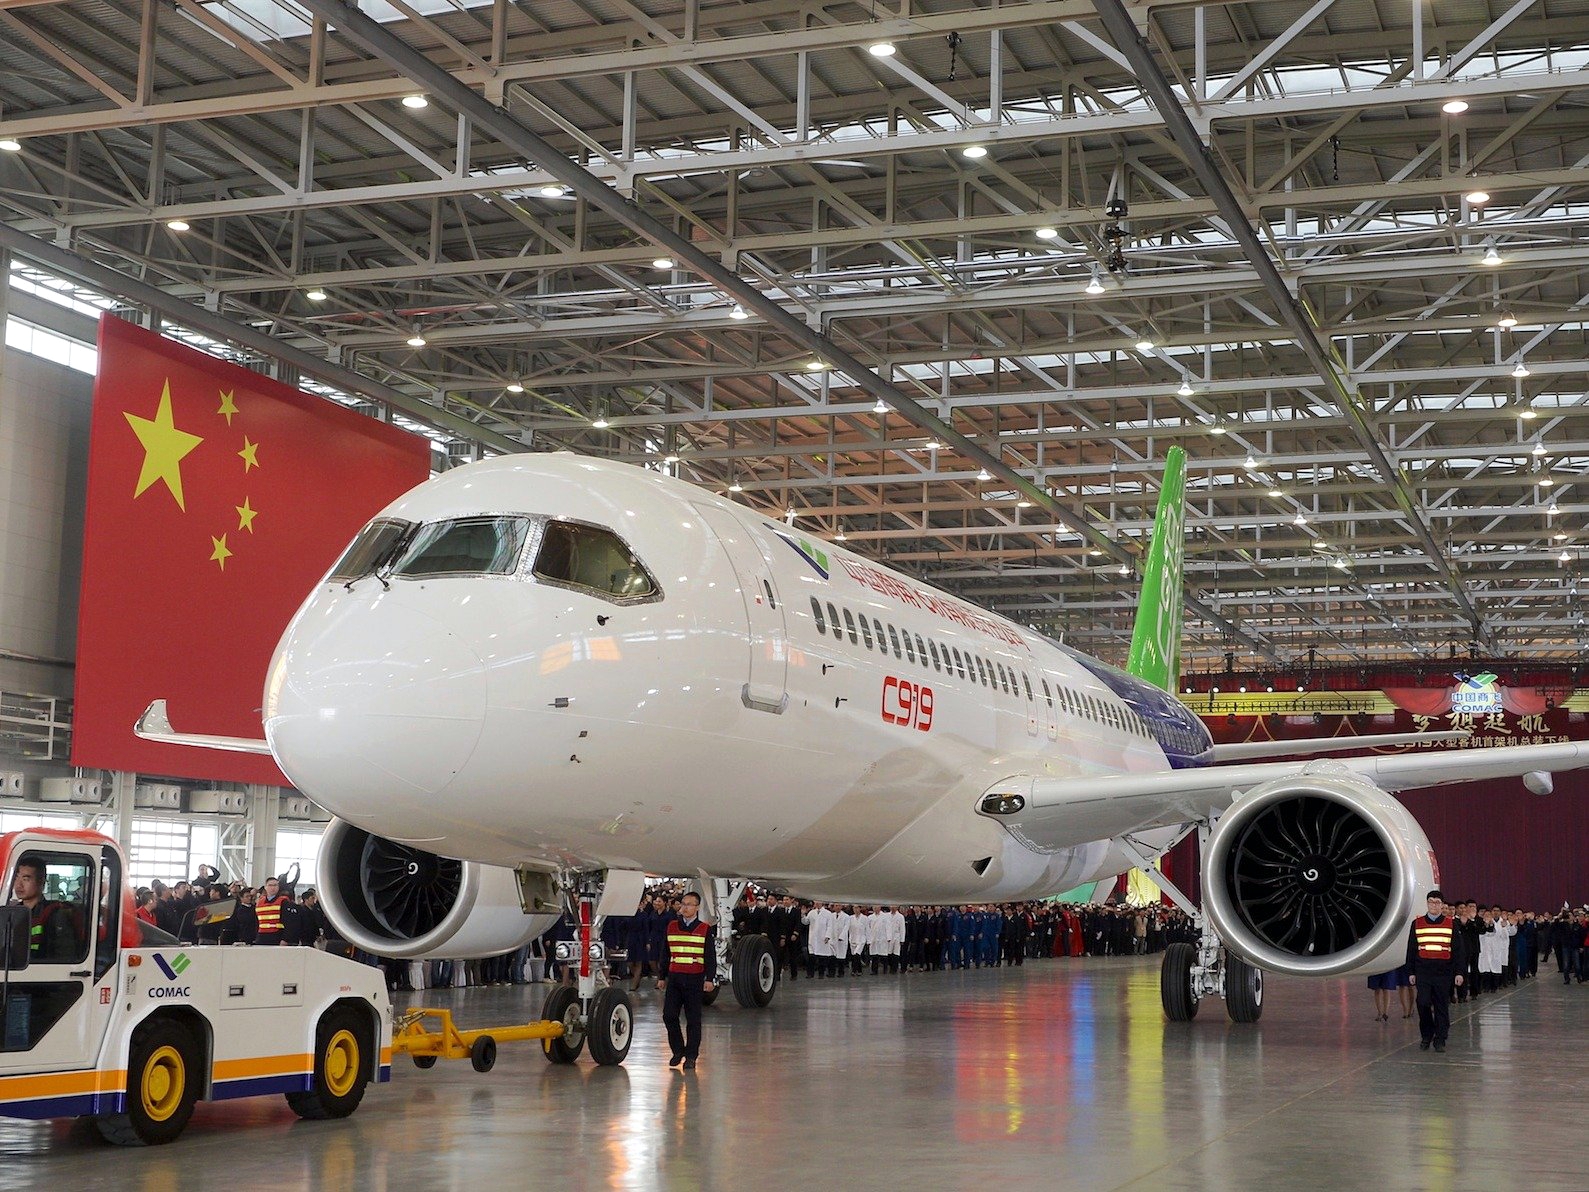 Китайская корпорация коммерческого авиастроения (Comac) выкатила из цеха первый собранный экземпляр C919. Это первый пассажирский среднемагистральный лайнер китайского производства. Он будет конкурировать со среднемагистральными моделями главных авиаконцернов мира - Boeing 737 и Airbus A320